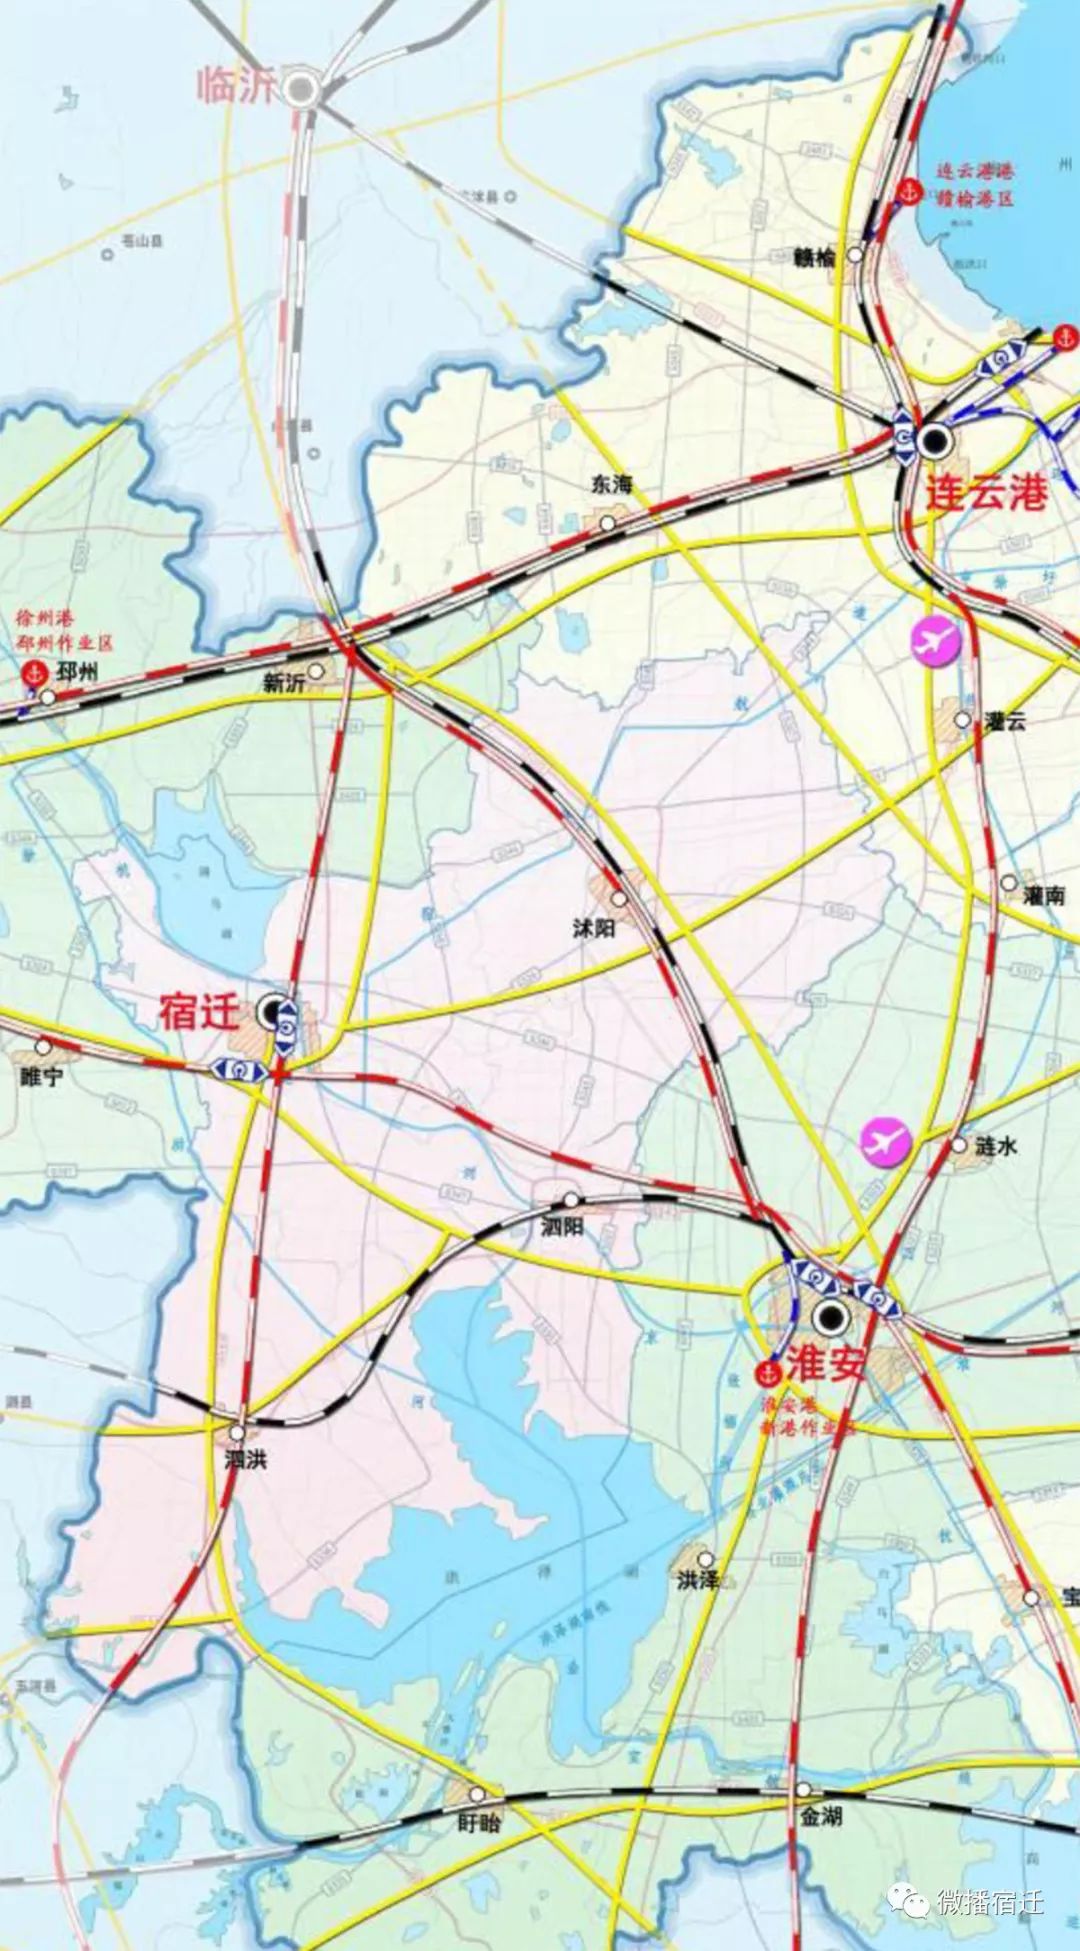 根据规划图,淮安至新沂铁路线路起自淮安东站, 沭阳,至新沂.